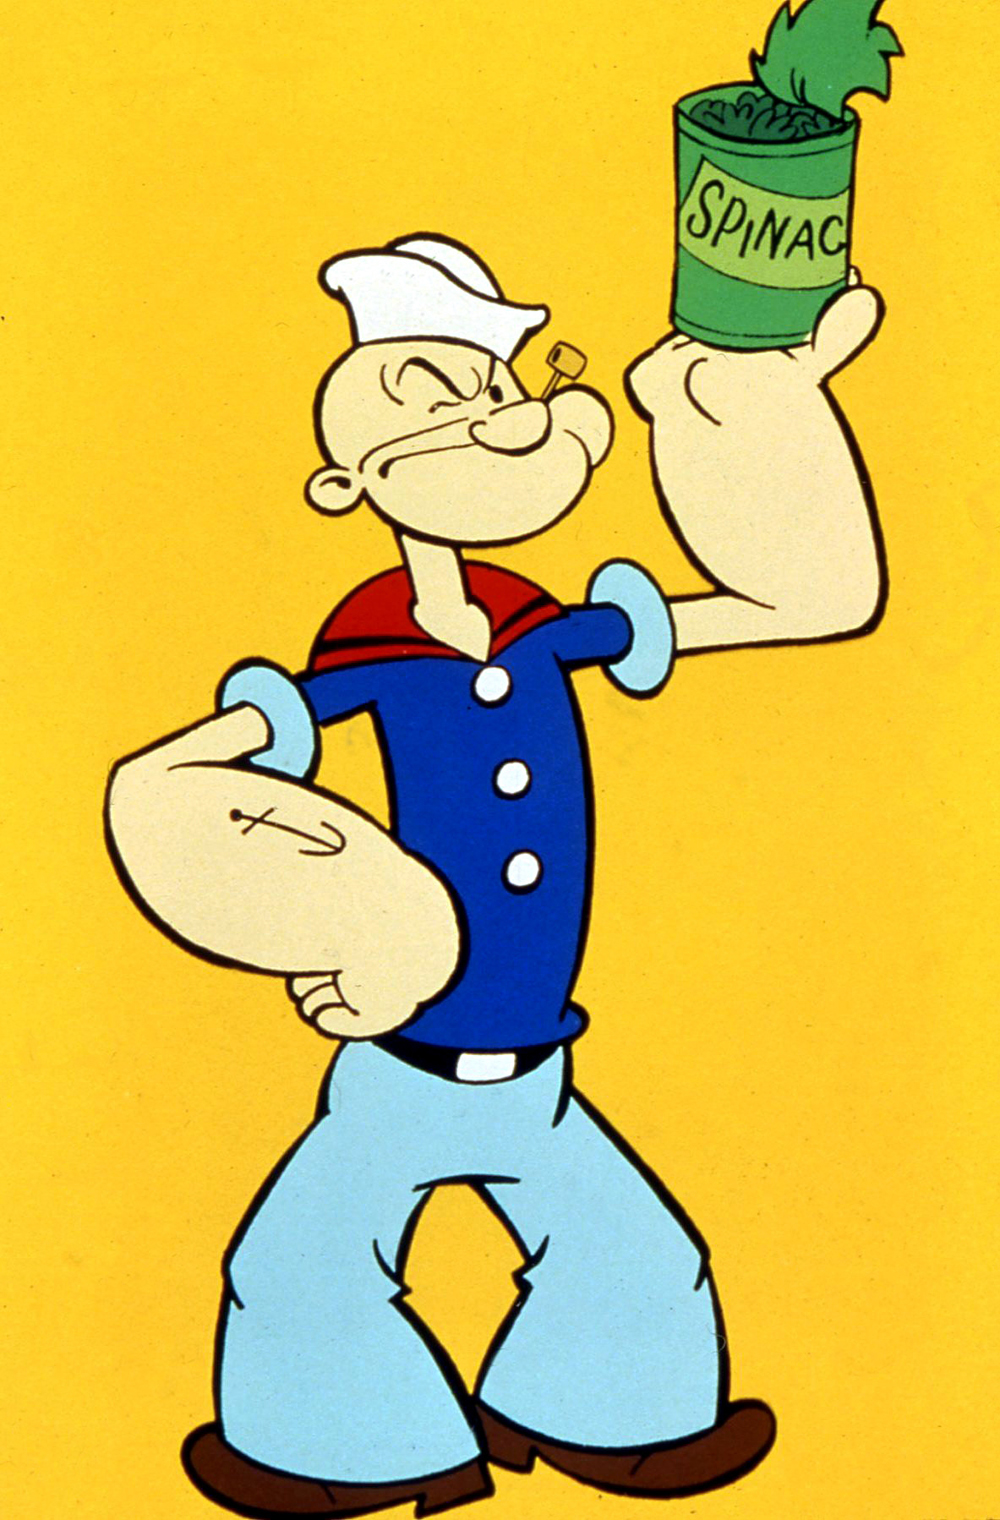 Popeye pertsonaia 1929an sortu zuten eta 1932az geroztik espinakek ematen diote aparteko indarra.